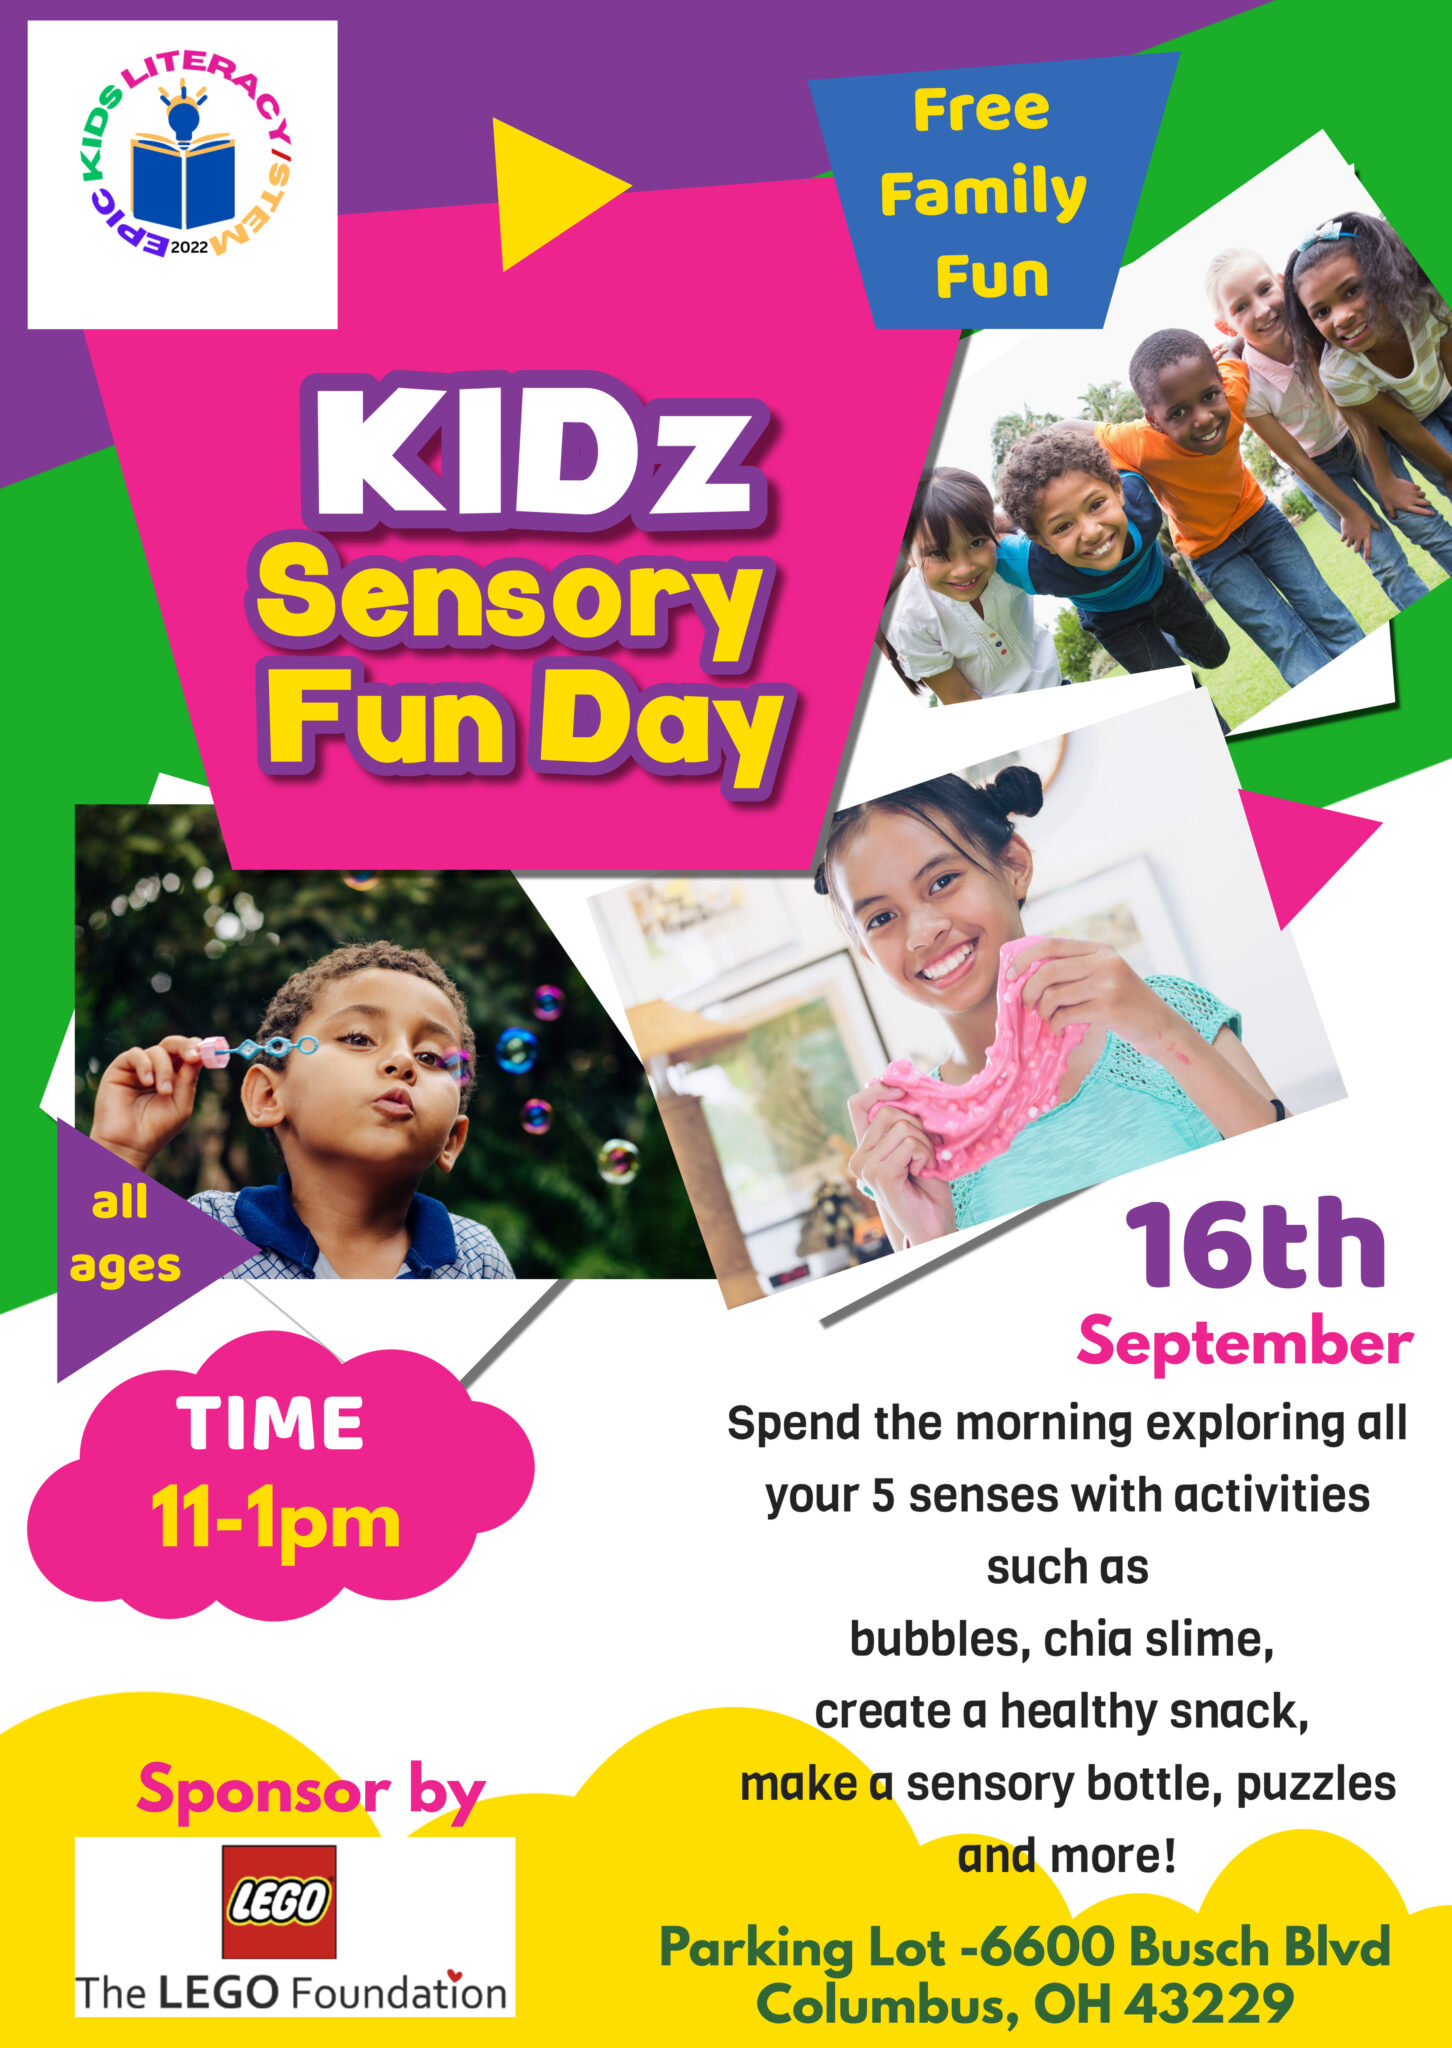 Kidz Sensory Fun Day